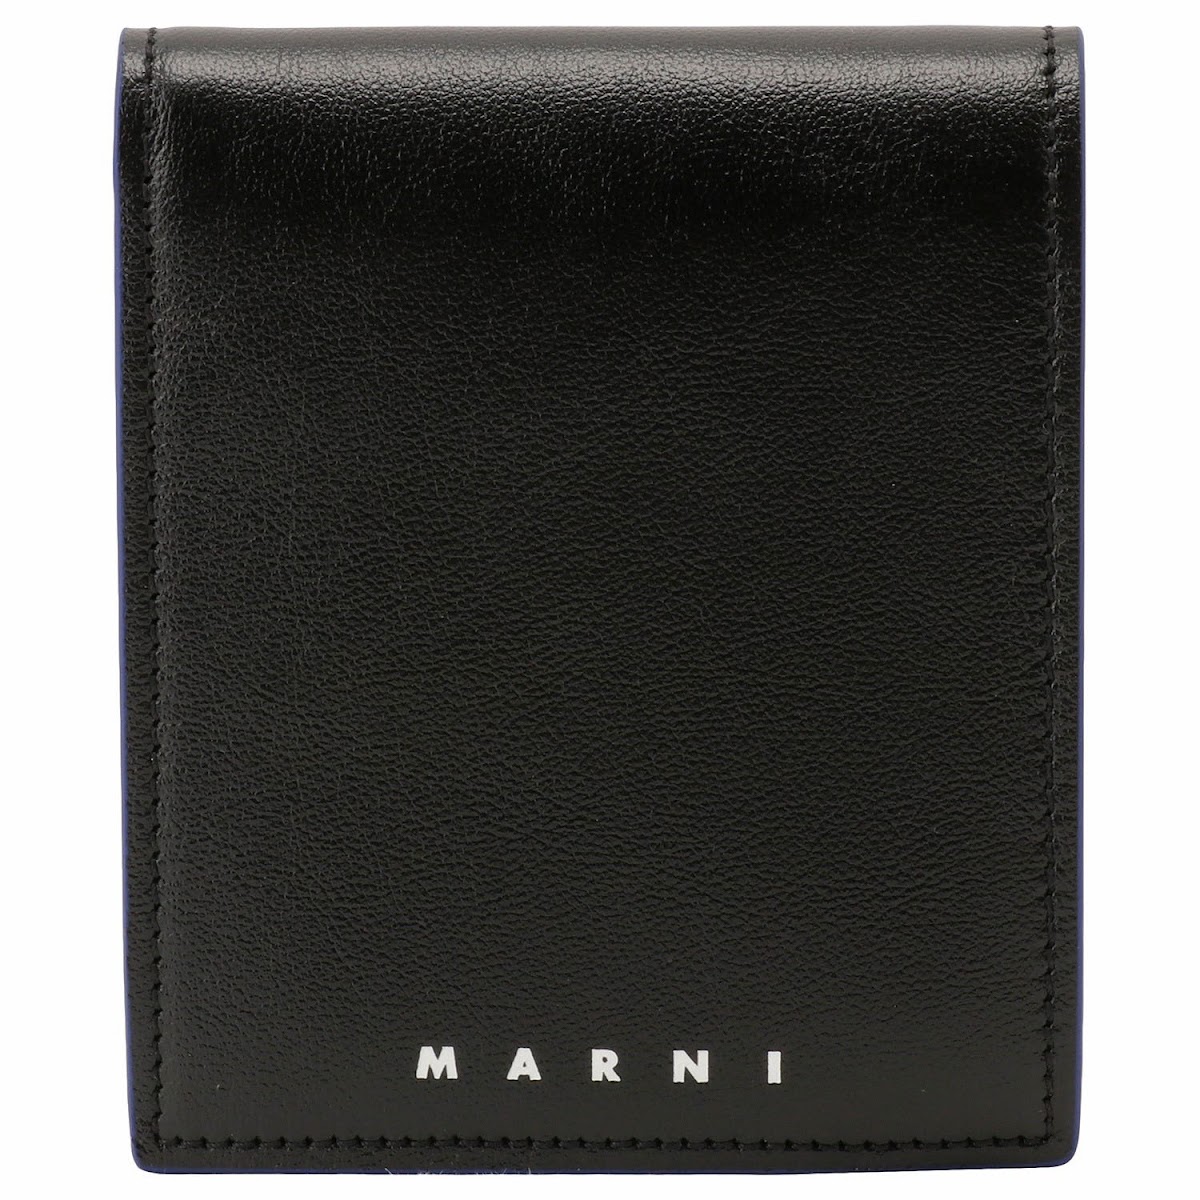 マルニ MARNI PFMI0049U0 P2644 Z452B カラーブロック 二つ折り財布 ブラックマルチ メンズ ユニセックス